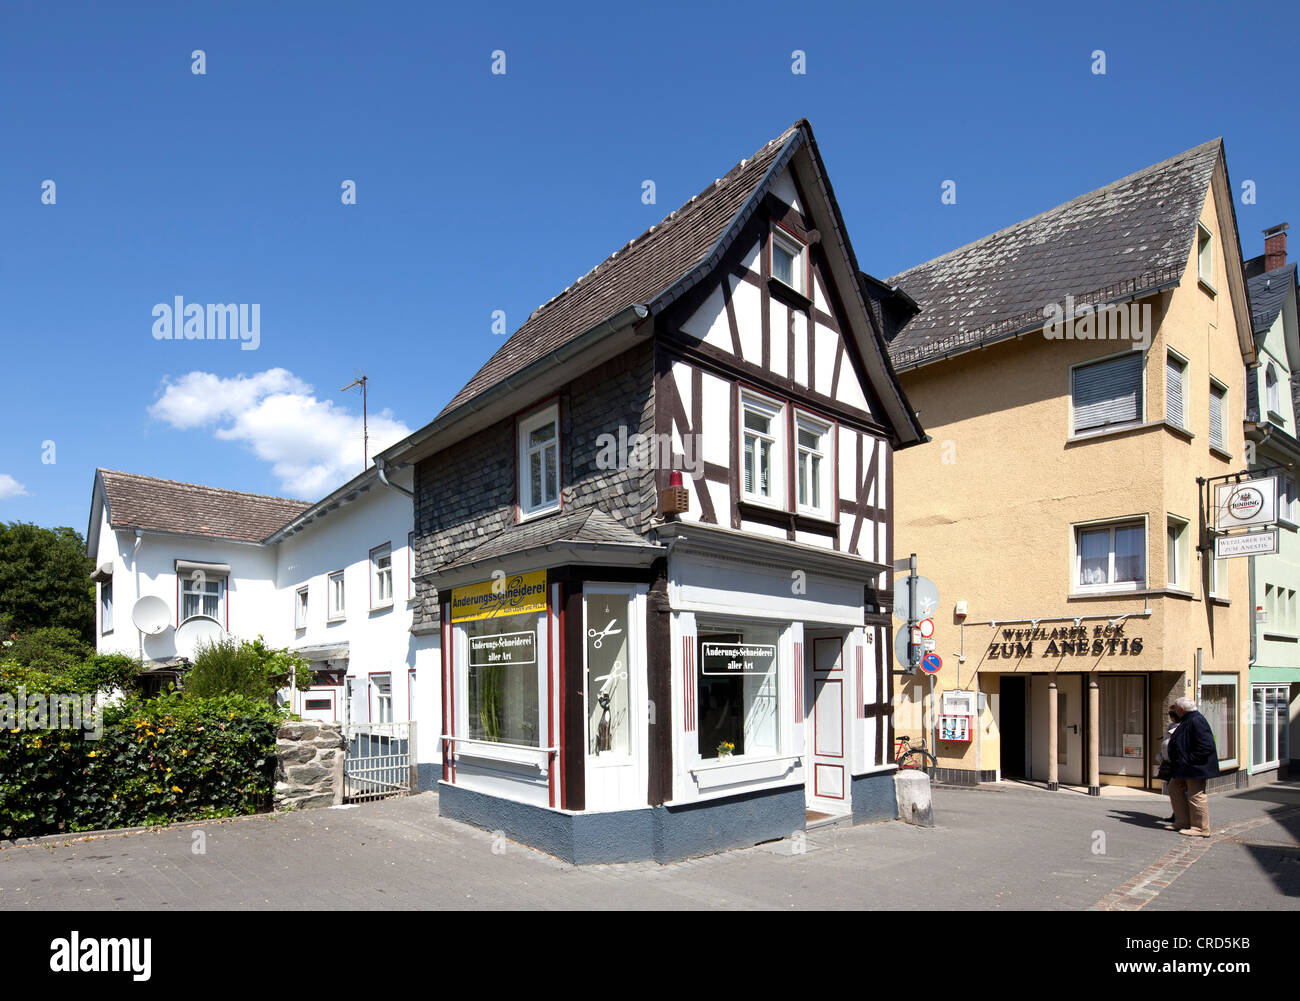 Altes Zollhaus, Fachwerkhaus, Altstadt, Wetzlar, Hessen, Deutschland, Europa, PublicGround Stockfoto